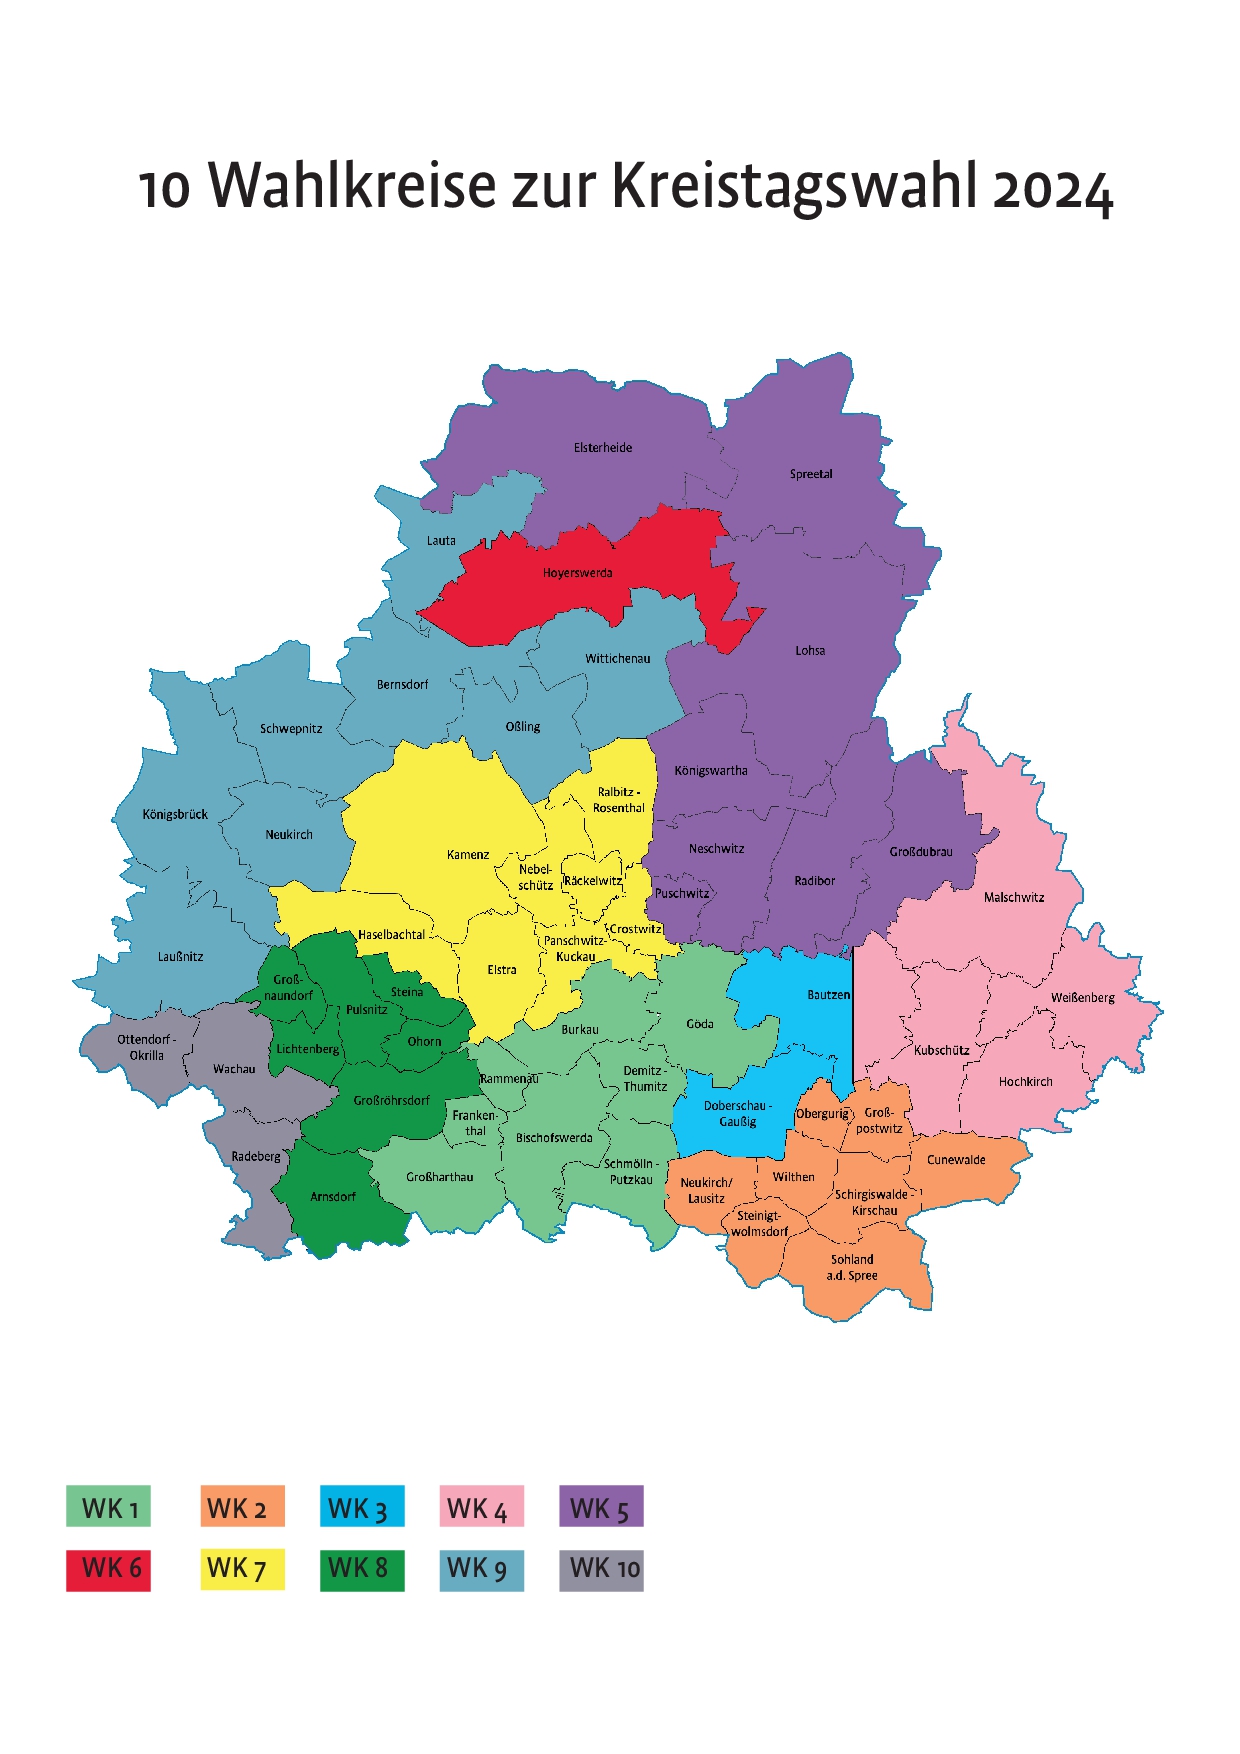 Das Bild zeigt eine Karte des Landkreises Bautzen mit der Einteilung der Wahlkreise für die Kreistagswahl 2024.